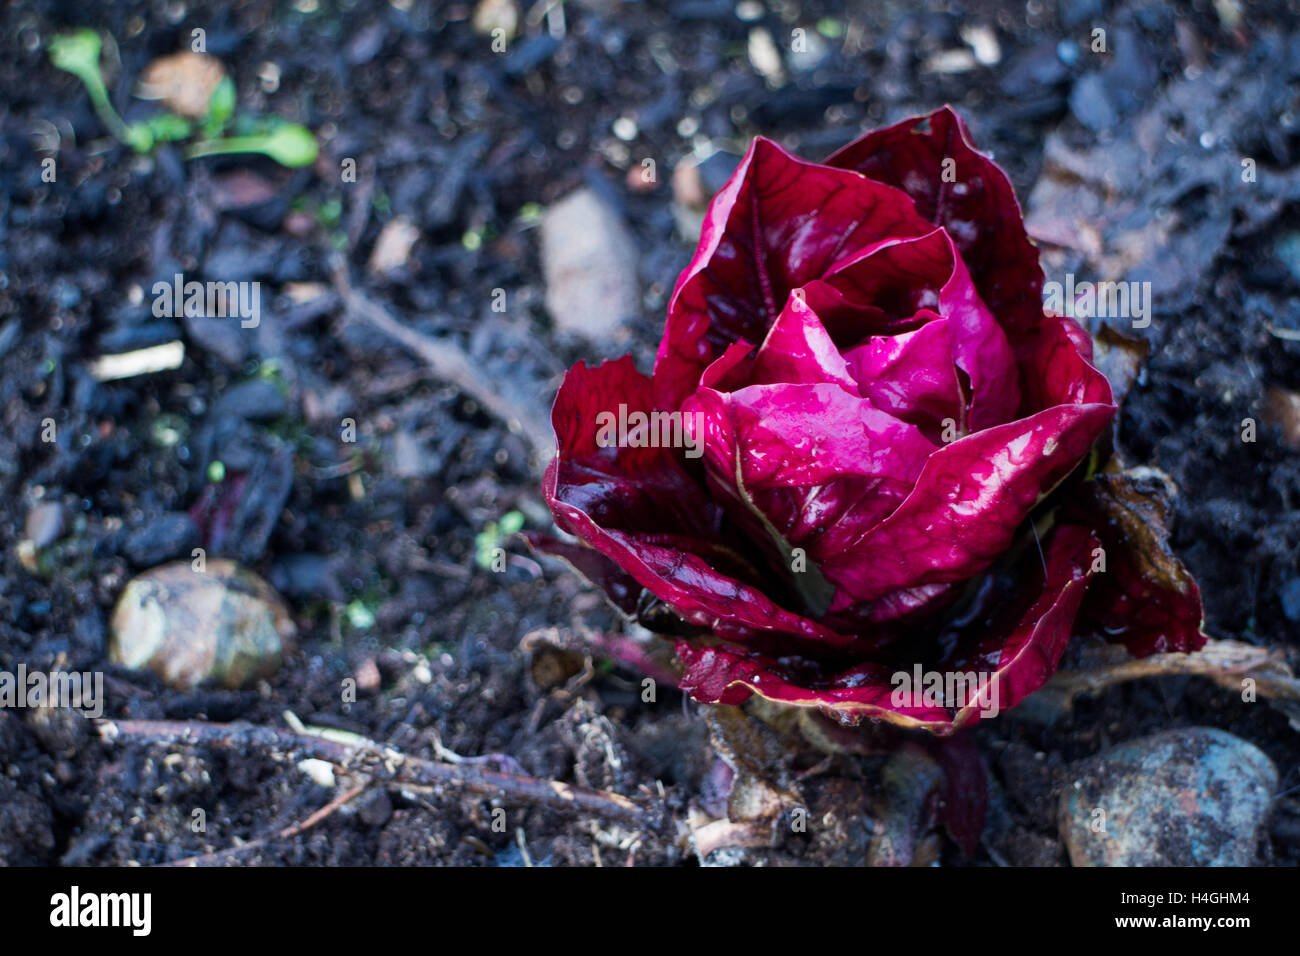 Le radicchio rouge poussant dans le sol ressemble à une rose, inspiré de l'alimentation Banque D'Images